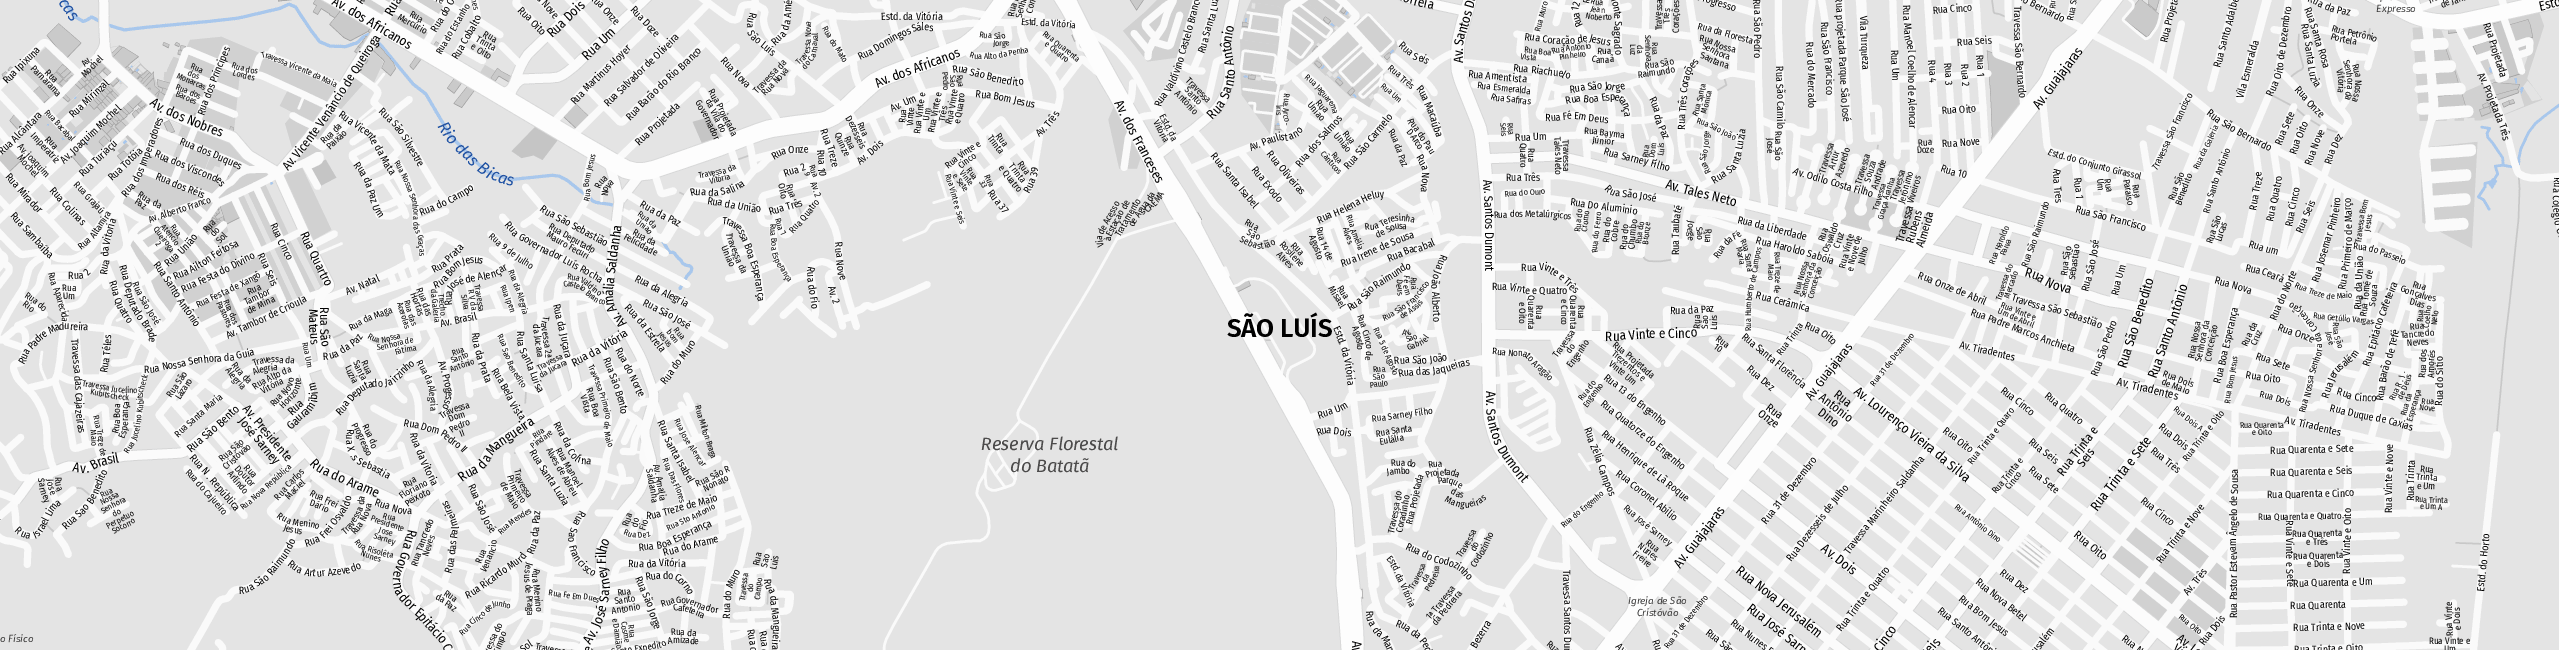 Stadtplan São Luís zum Downloaden.